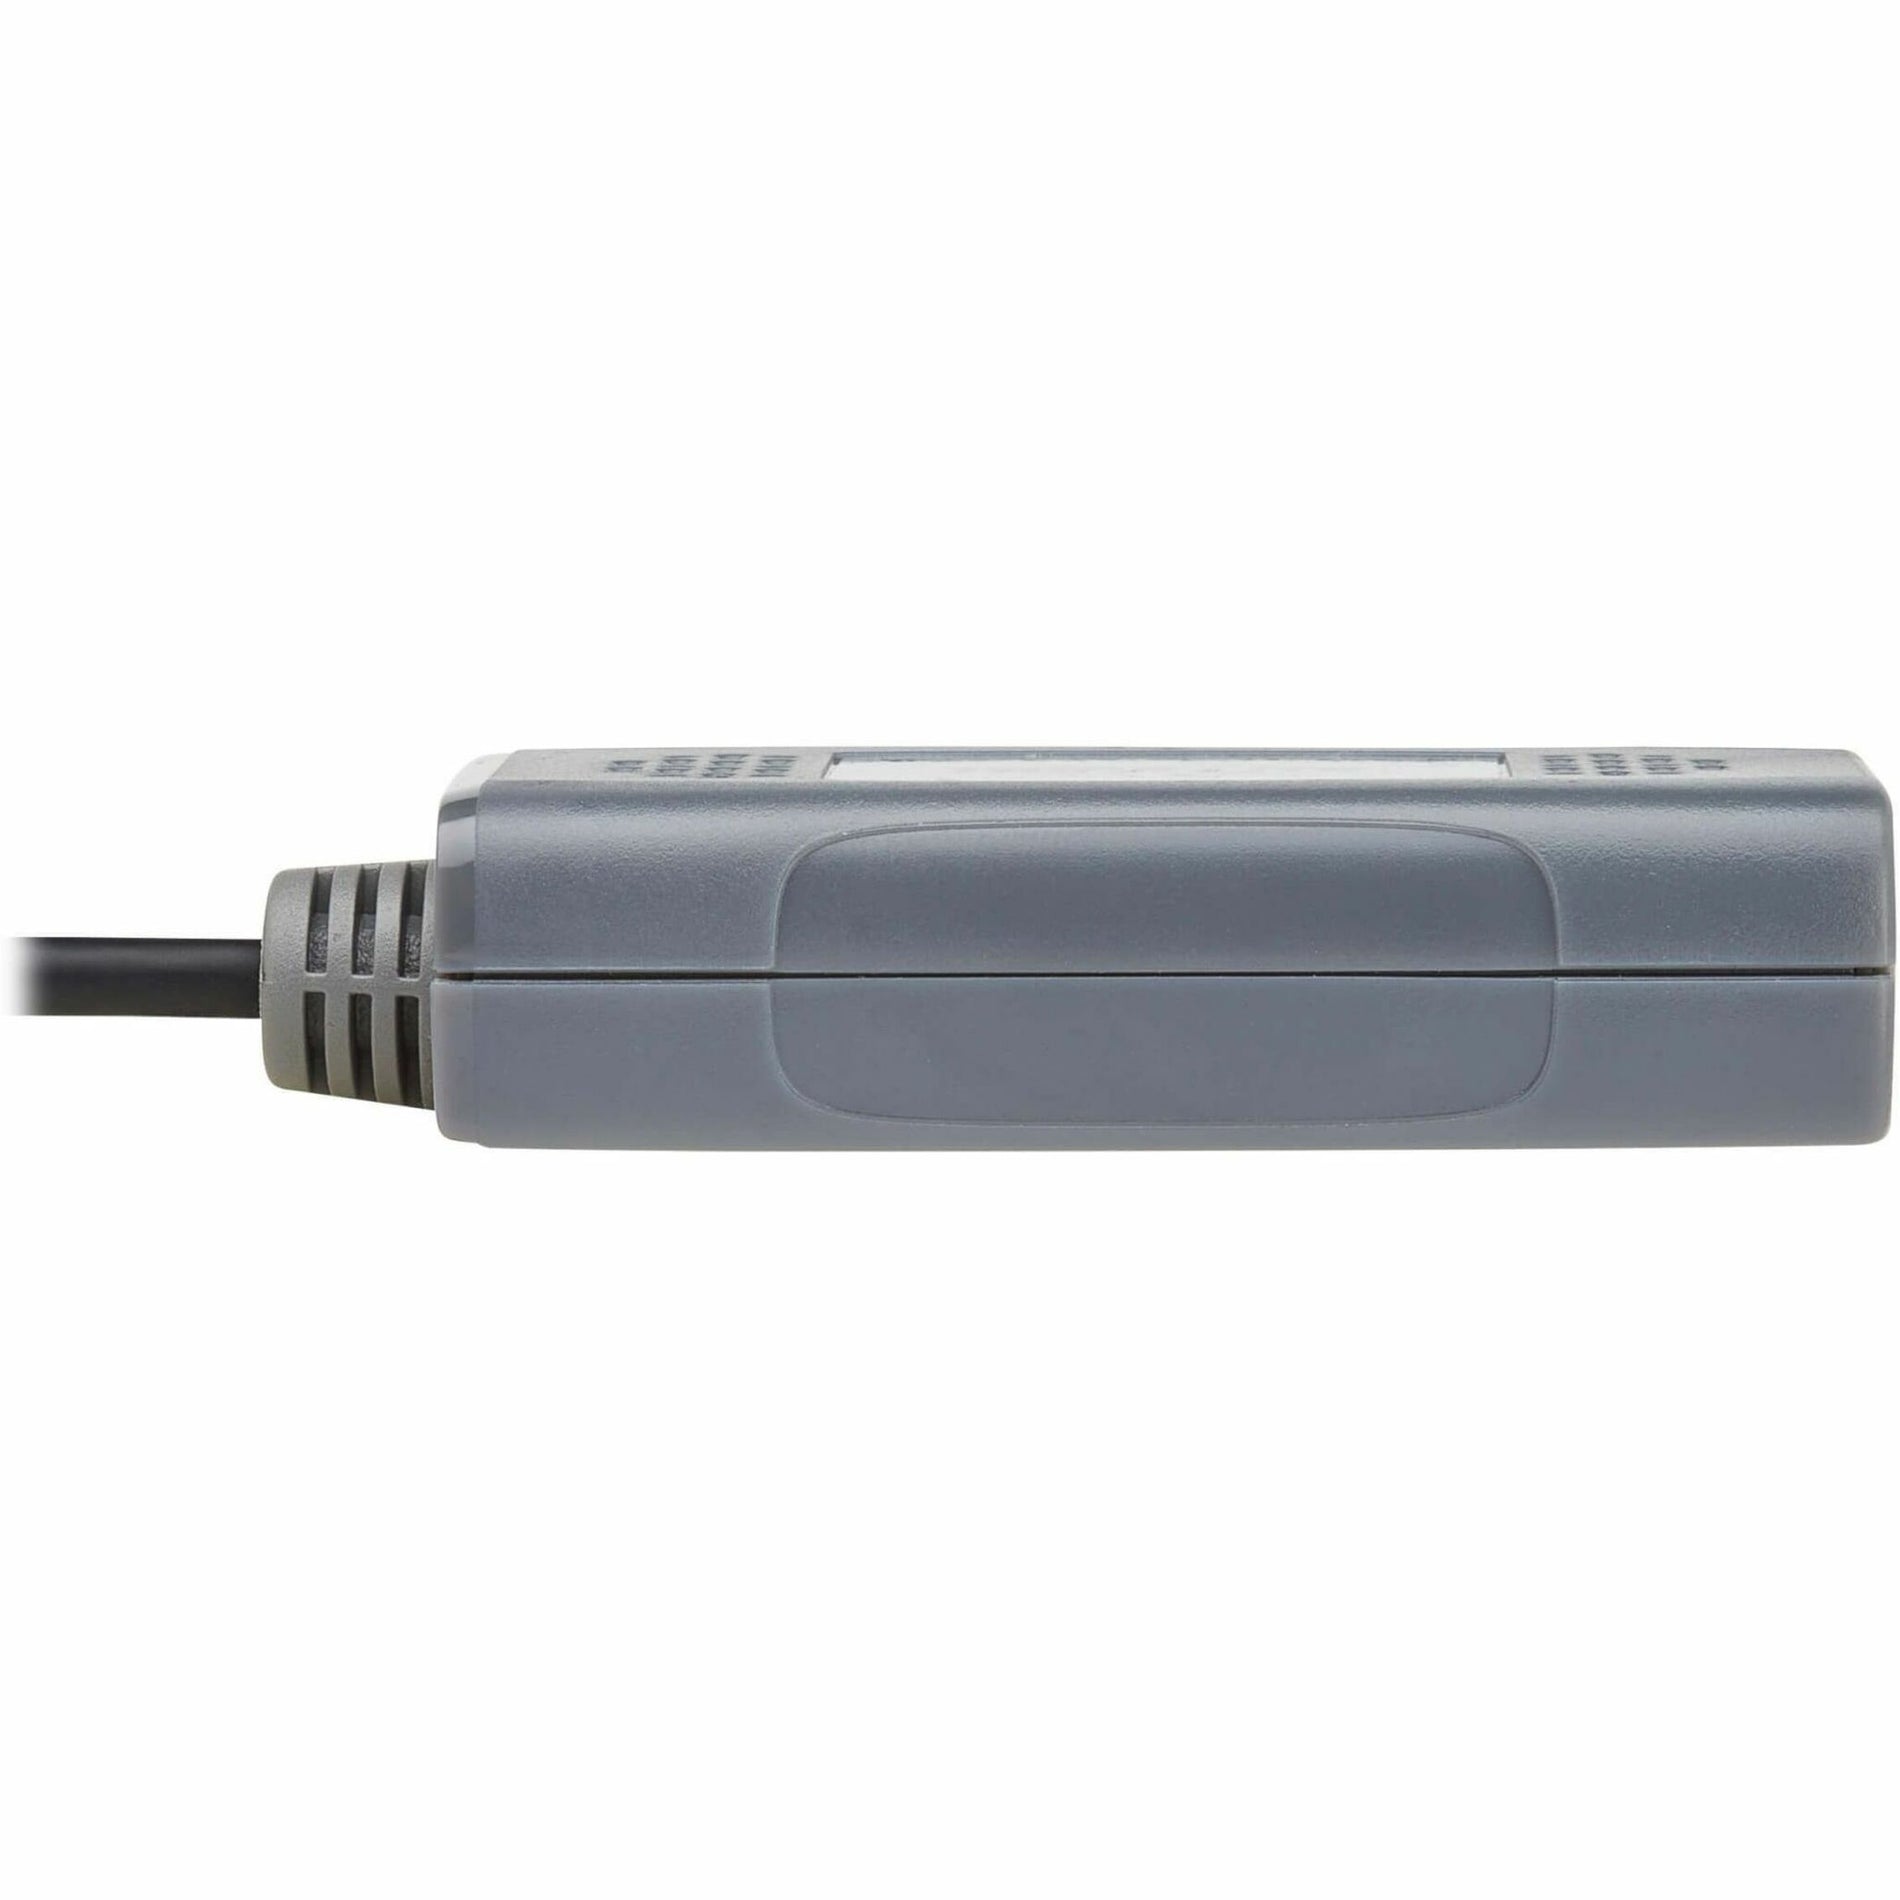 Tripp Lite B127U-111-PHPH Video Extender Transmitter/Receiver 4K 3840 x 2160 TAA Compliant 1 Year Warranty